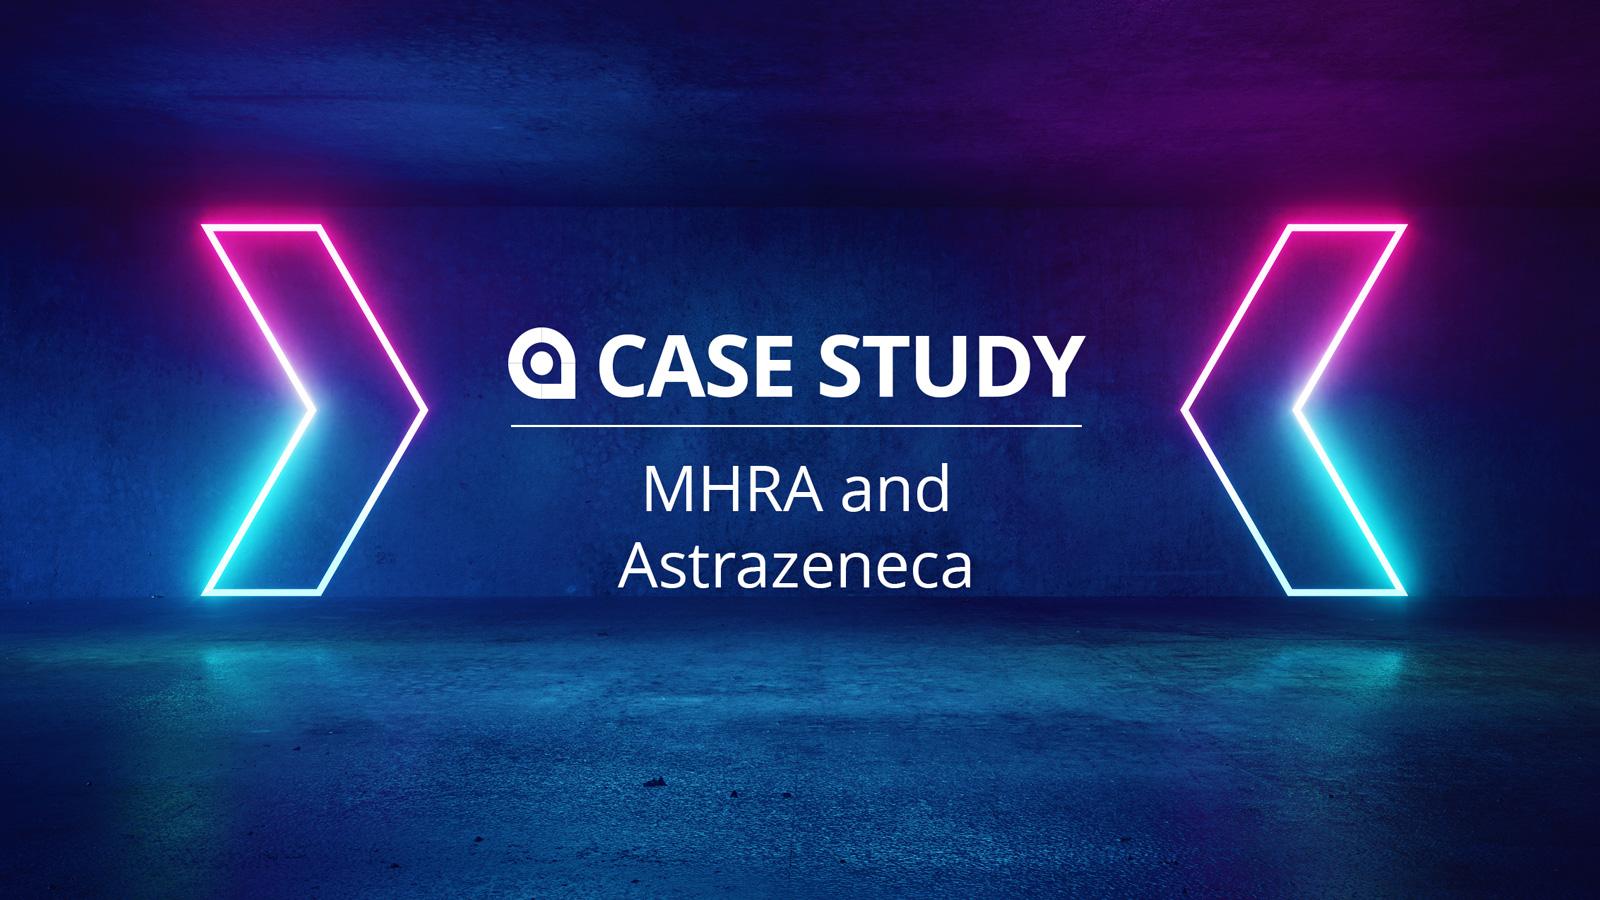 Case Study: MHRA and AstraZeneca